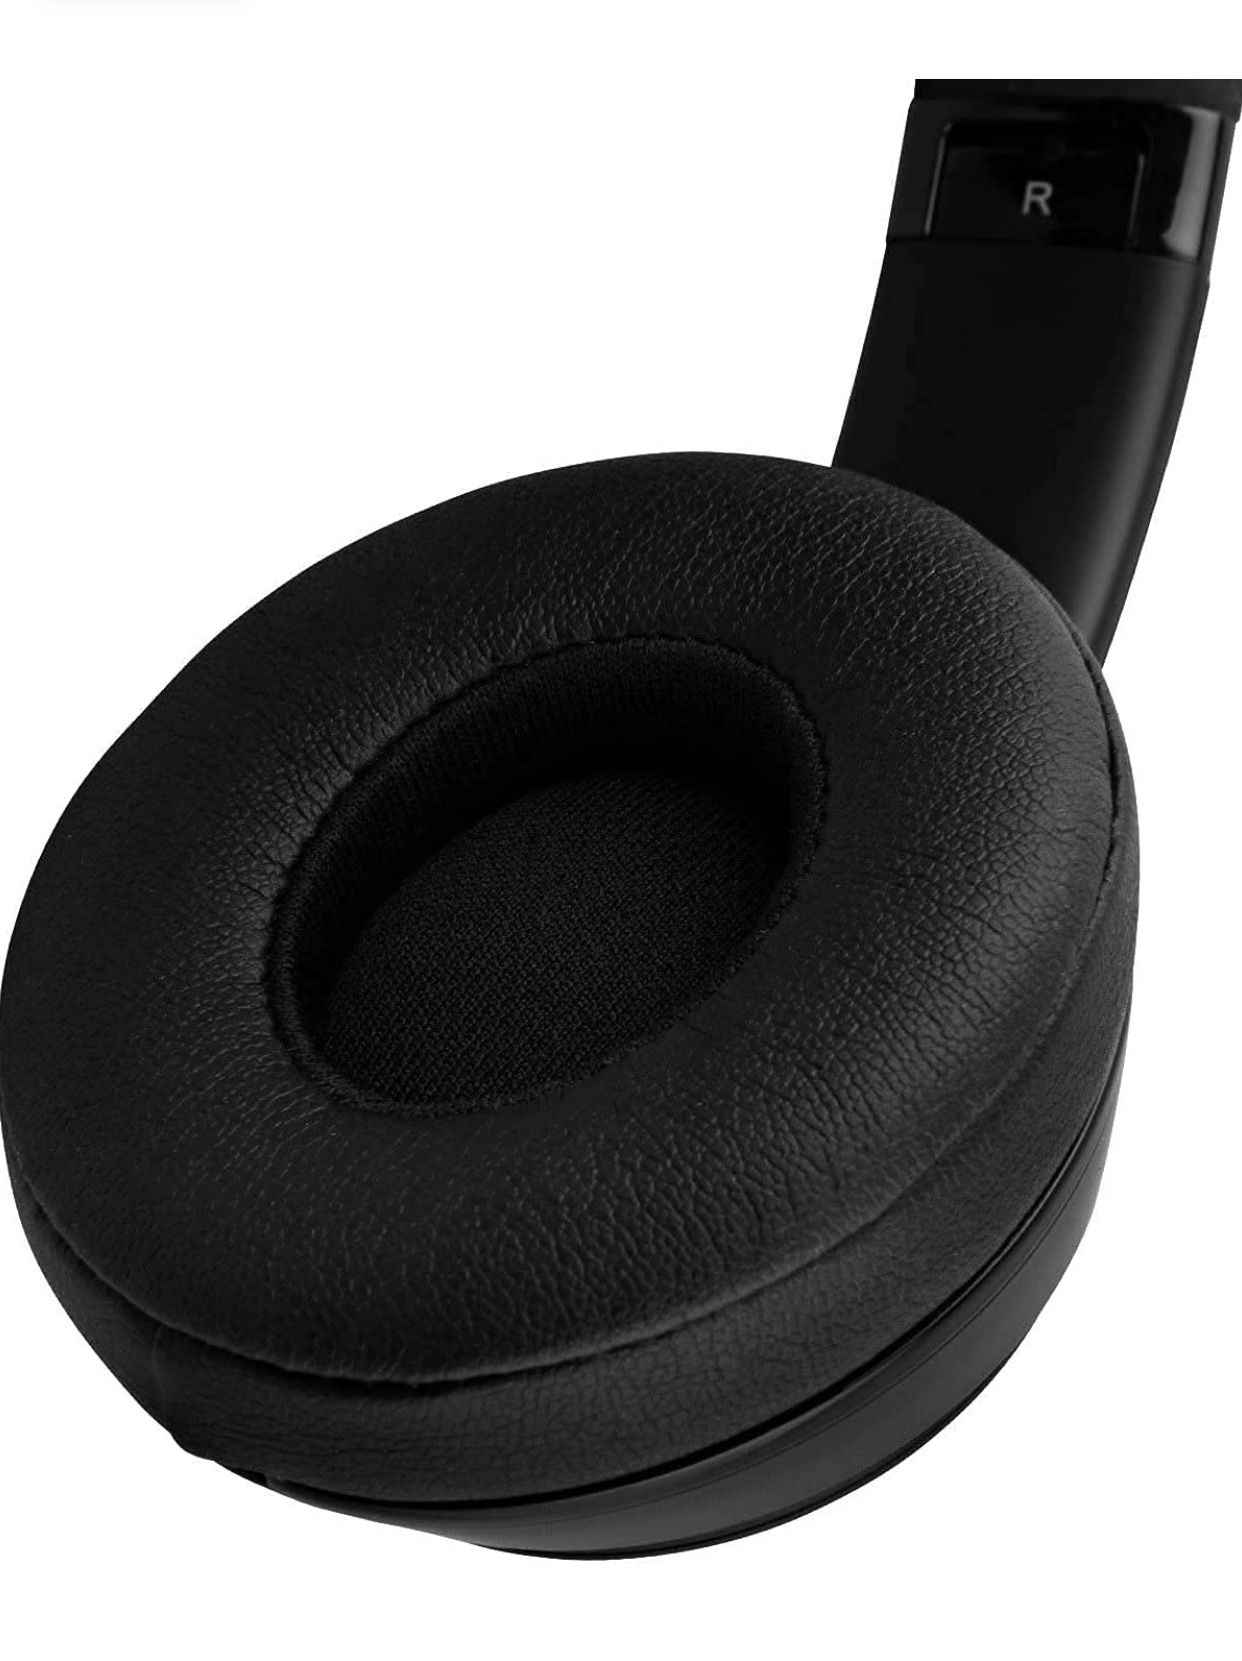 Used beats Solo3 Wireless Headphones 